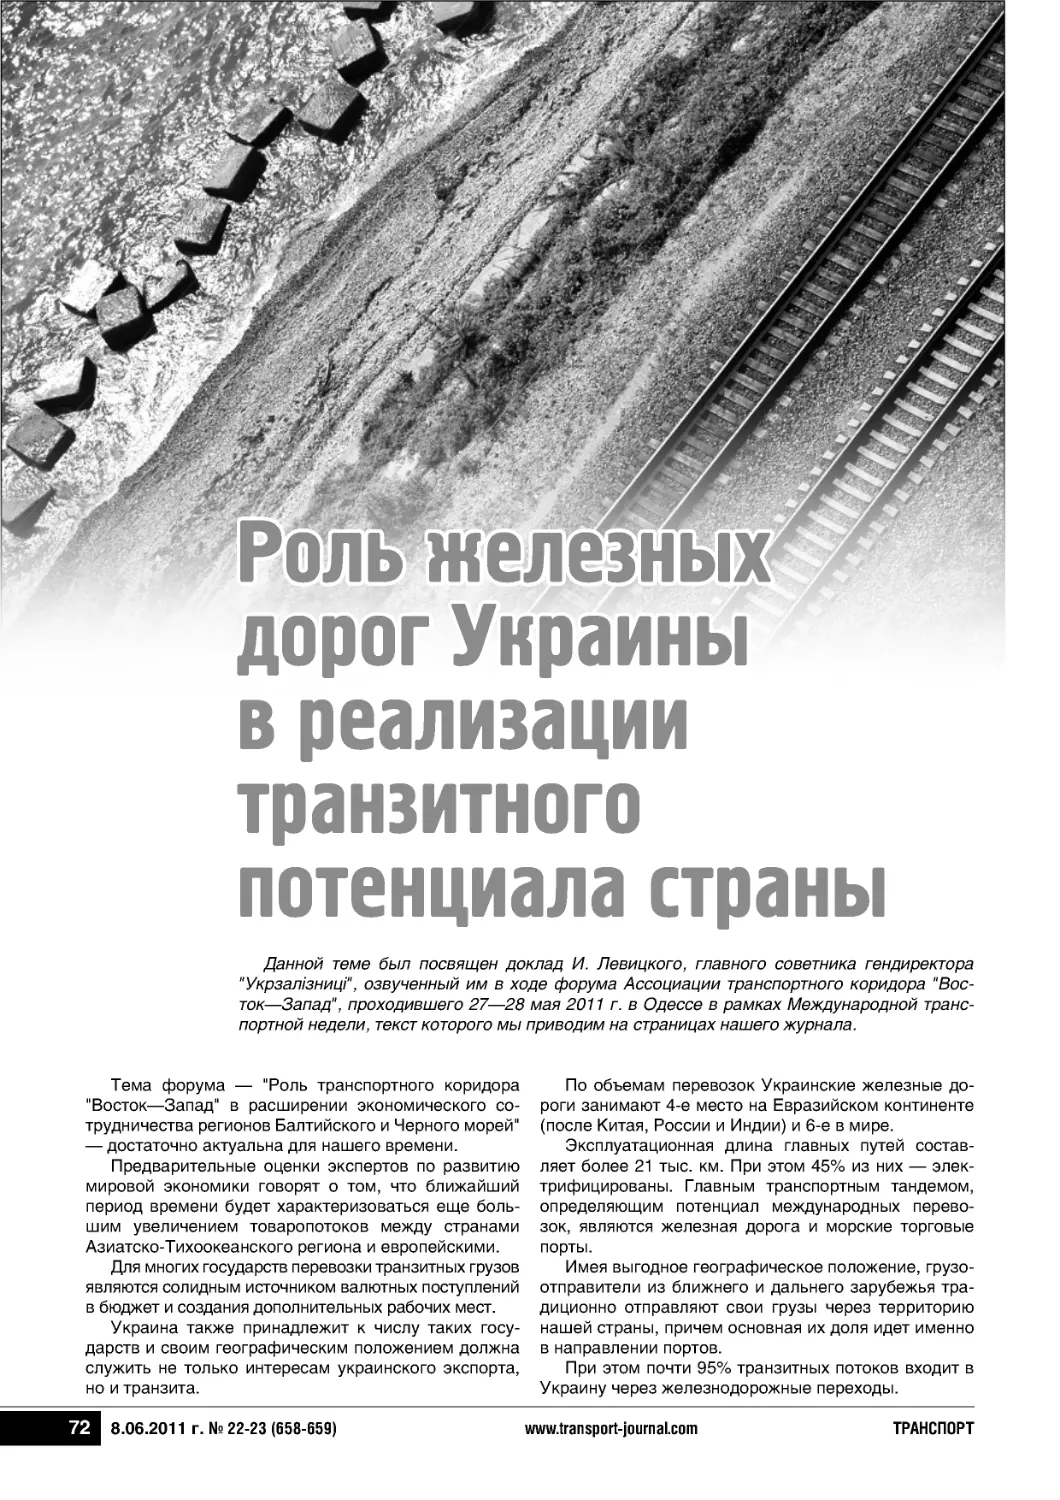 Роль железныхдорог Украиныв реализациитранзитногопотенциала страны